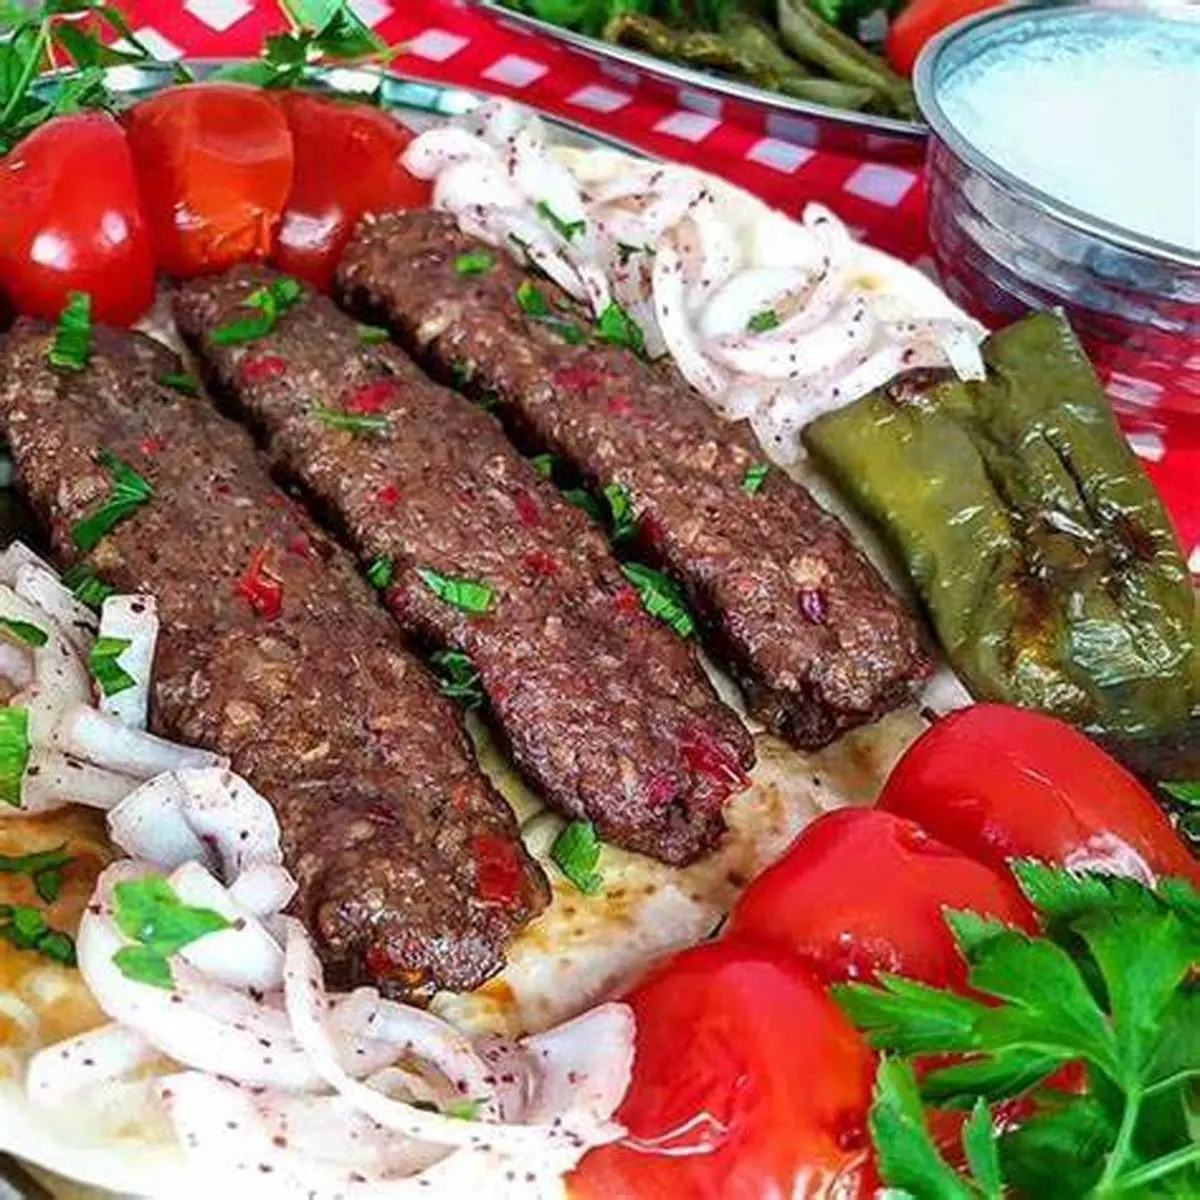 کاسه کباب آدنا غذای ترکیه‌ای بی نظیر رو تا به حال امتحان کردی؟ | بیا بهت یاد بدم توی خونه درست کنی+ویدئو